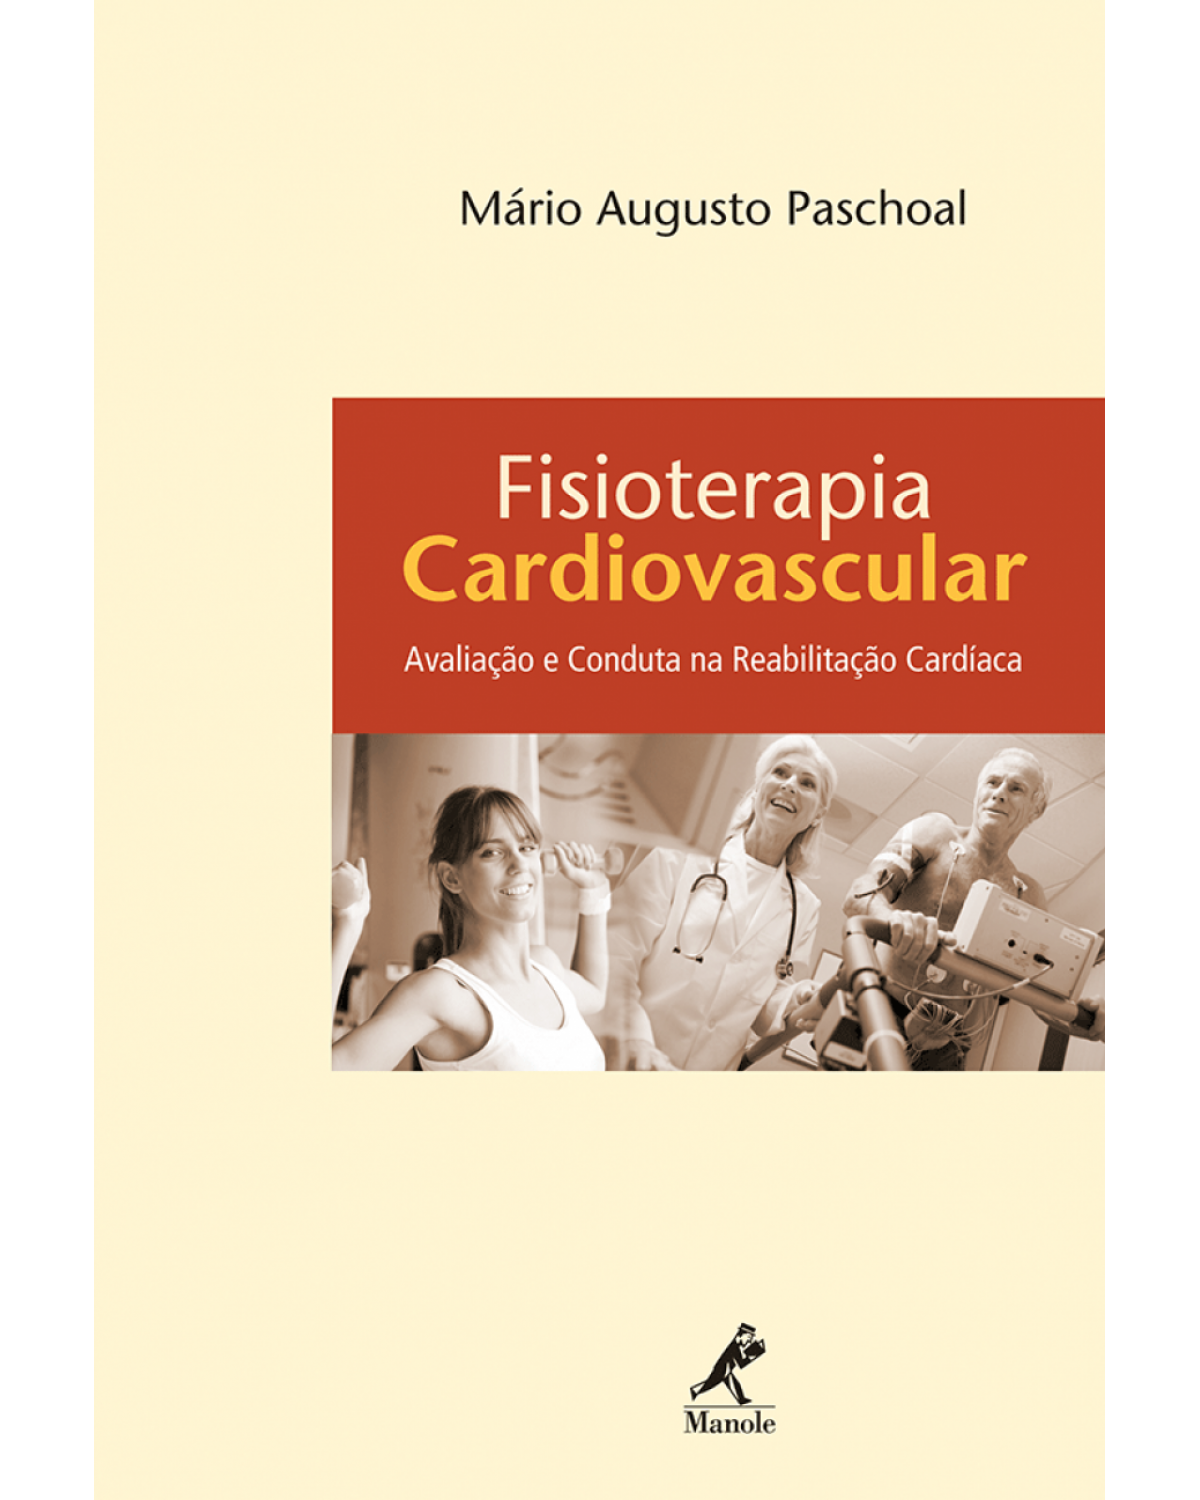 Fisioterapia cardiovascular - Avaliação e conduta na reabilitação cardíaca - 1ª Edição | 2010